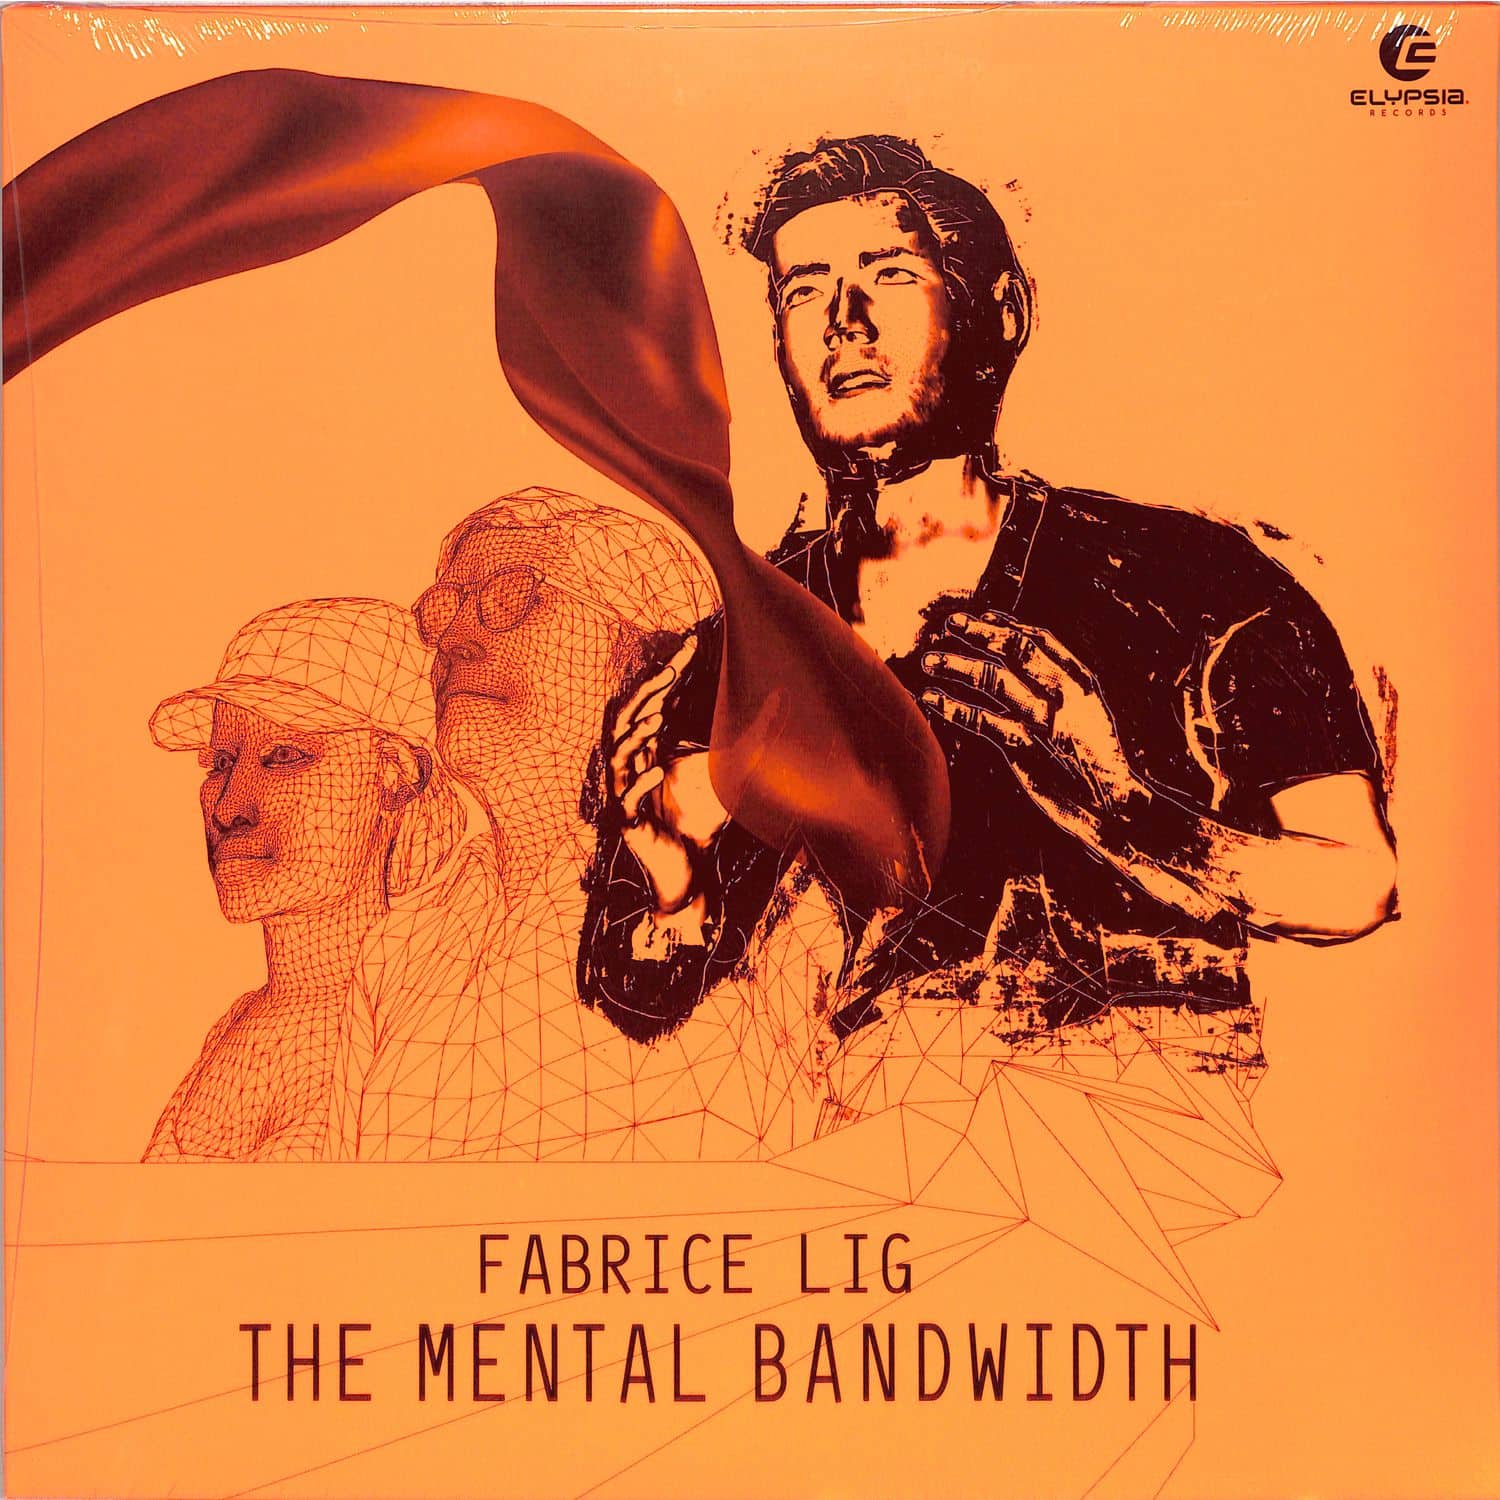 Fabrice Lig - THE MENTAL BANDWITH 